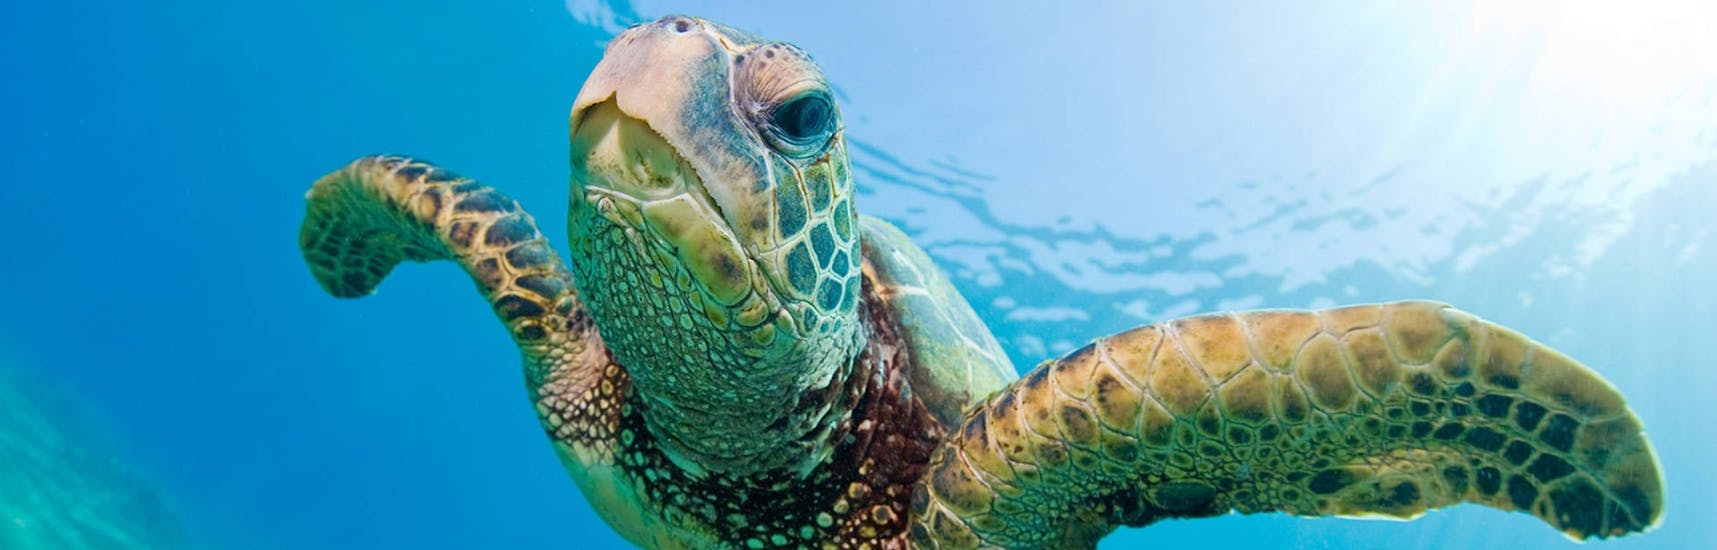 Una tartaruga nuota nell'acqua ed è curiosa e potrebbe essere avvistata con il noleggio barche ad Agios Sostis - Standard con Traventure Zakynthos.